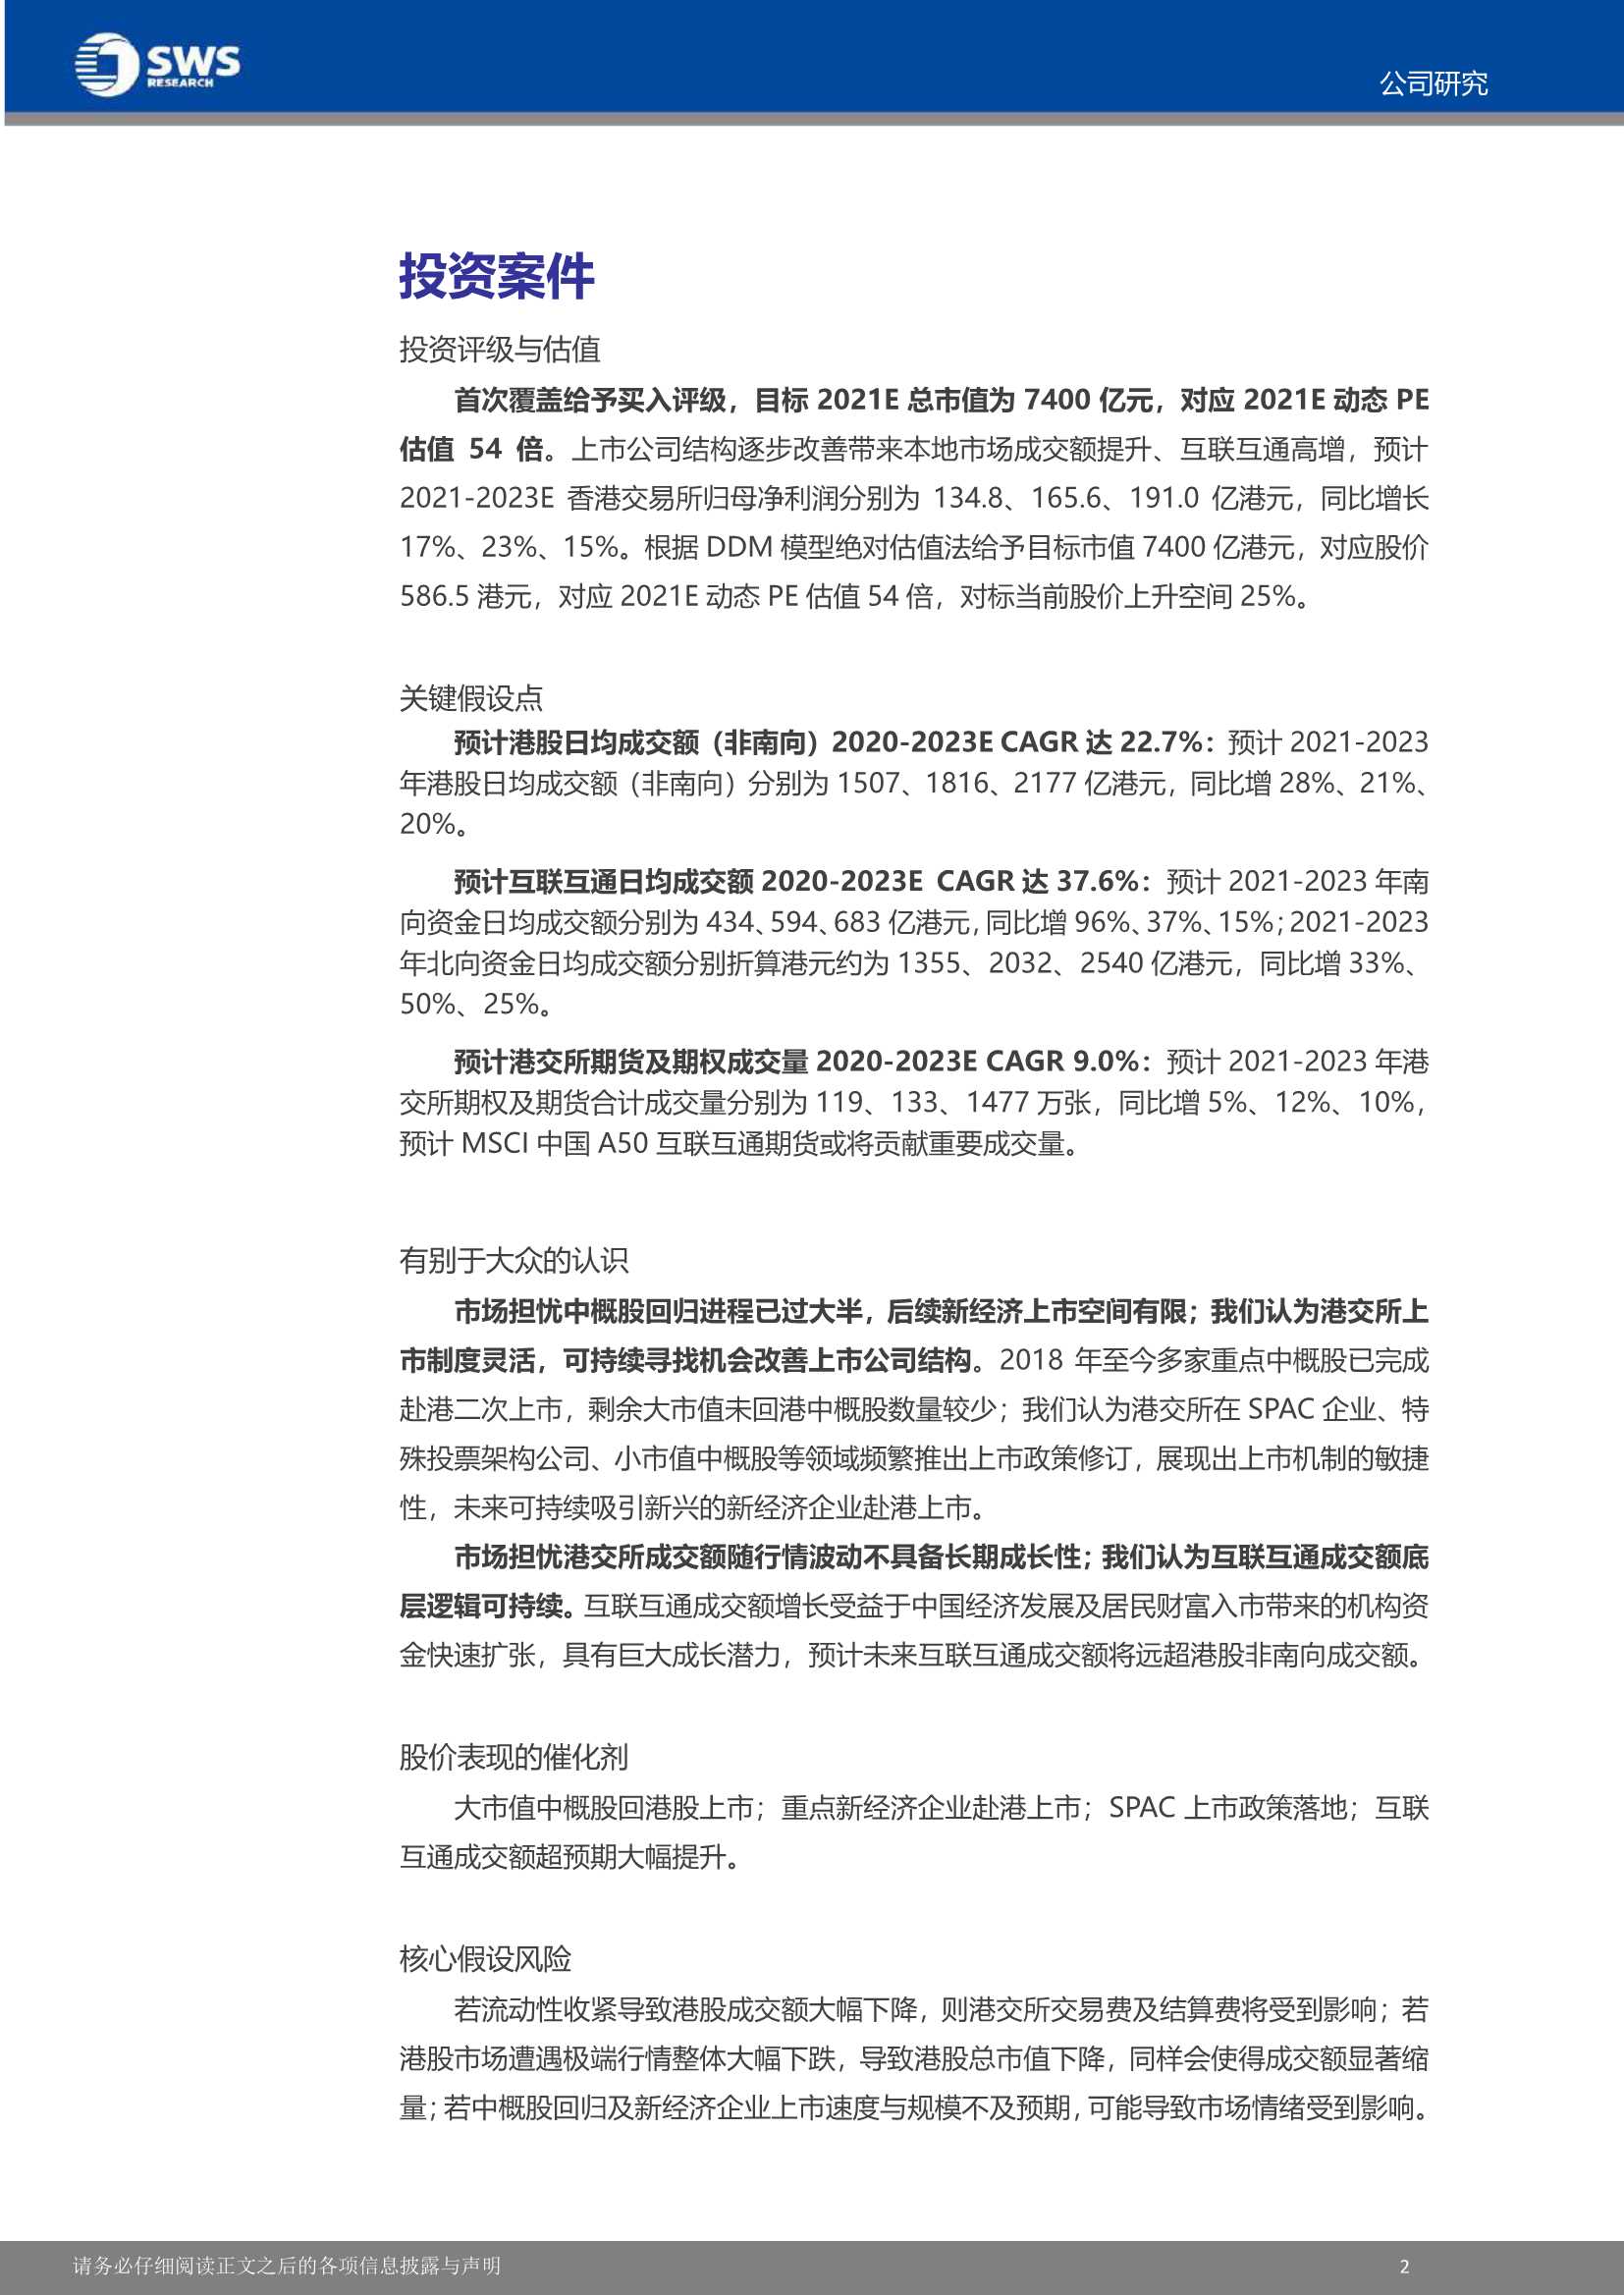 申万宏源-香港交易所-0388.HK-强稀缺属性，受益互联互通及新经济上市-20211210-22页